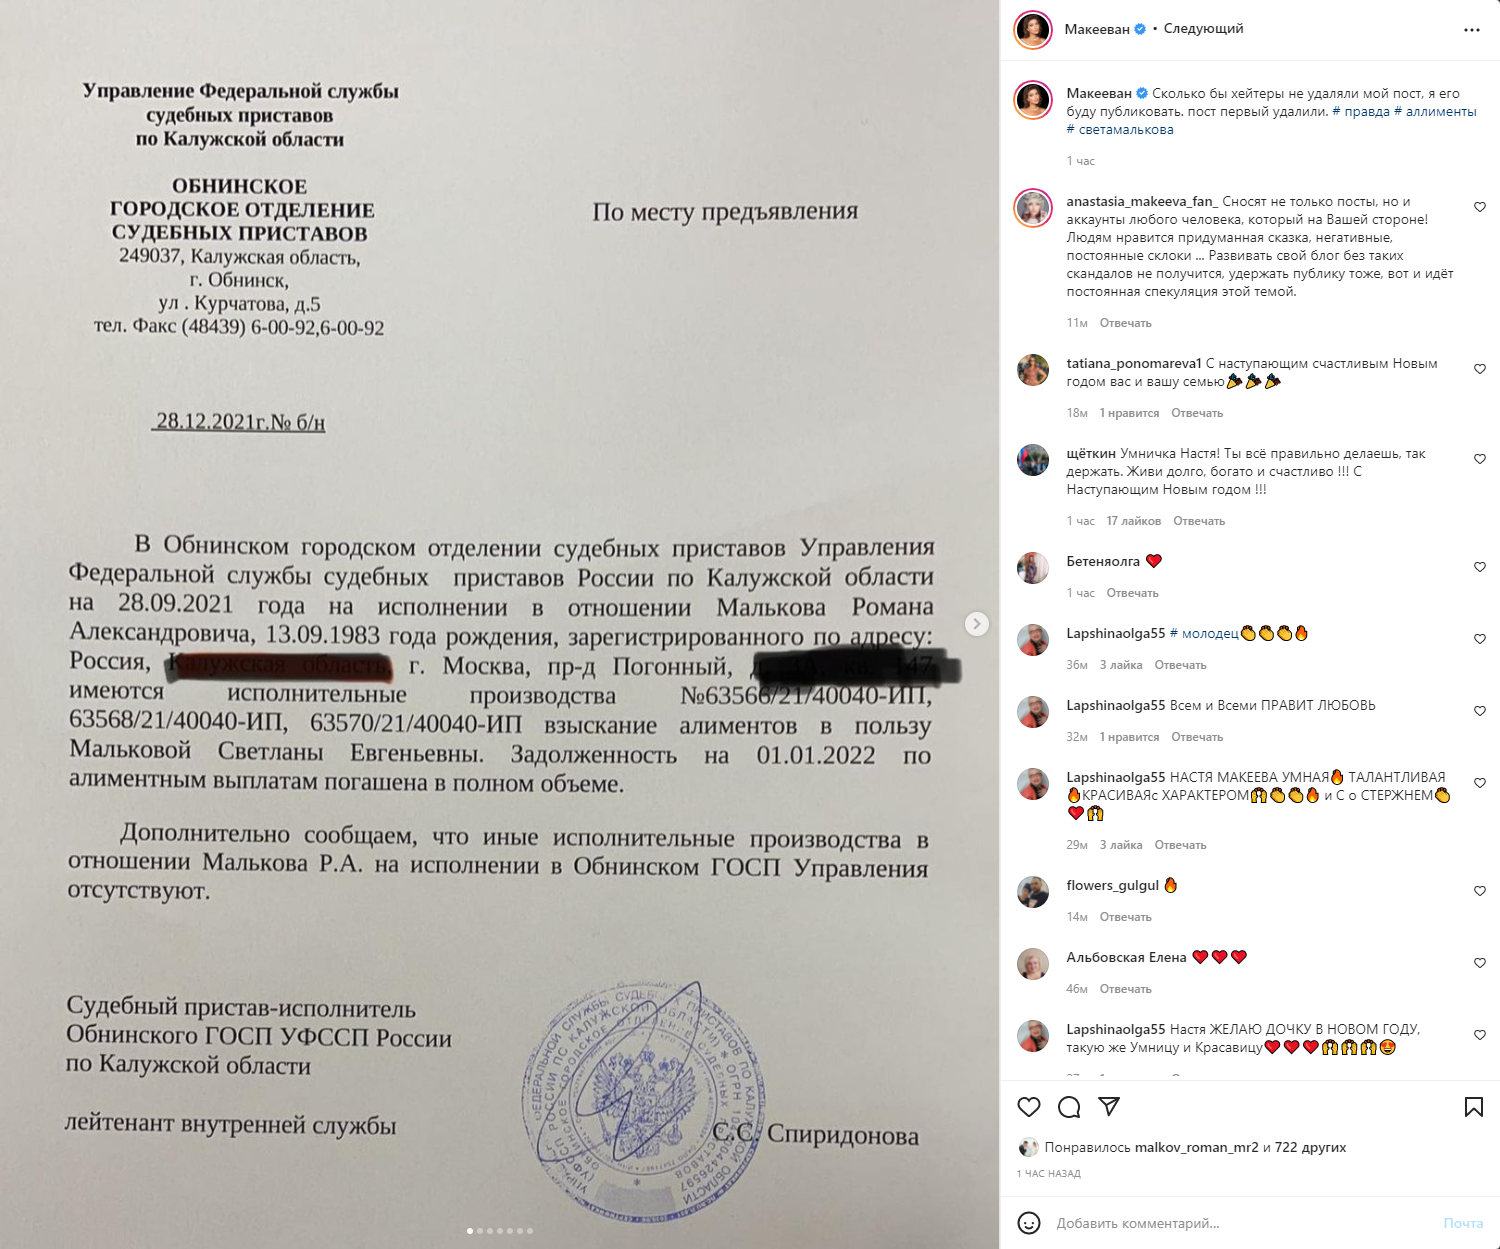 Нет долгов: Макеева обвинила Малькову во лжи и предложила пойти к психологу